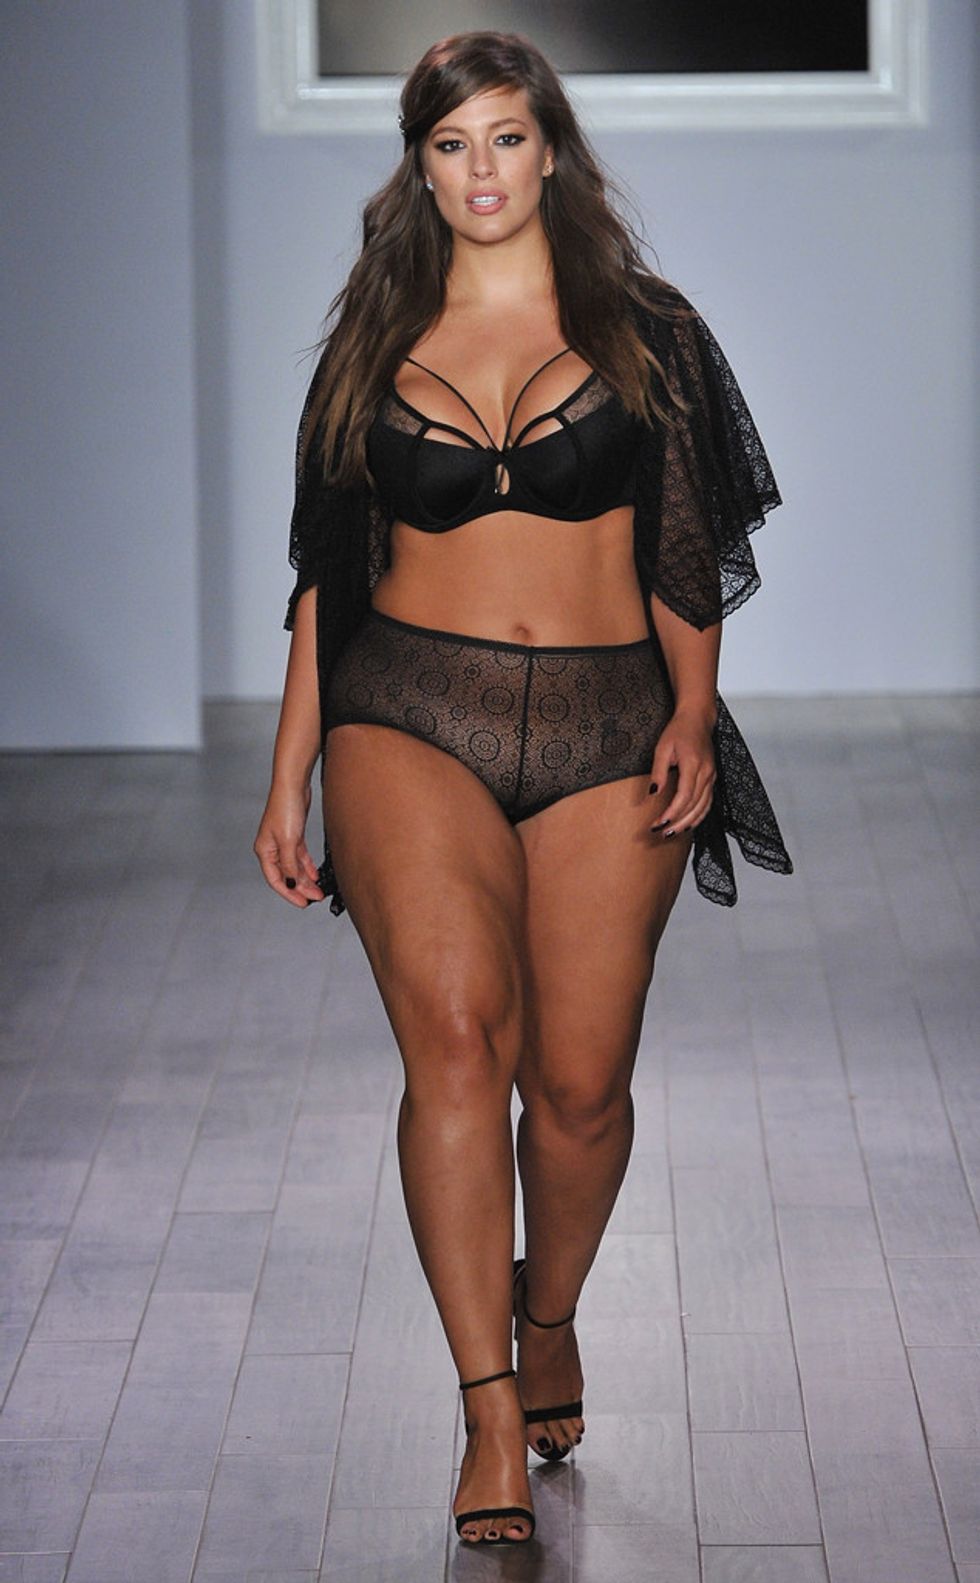 Gør det ikke se efter skole Plus-Size Model Ashley Graham Models Her Lingerie Line At NYFW - PAPER